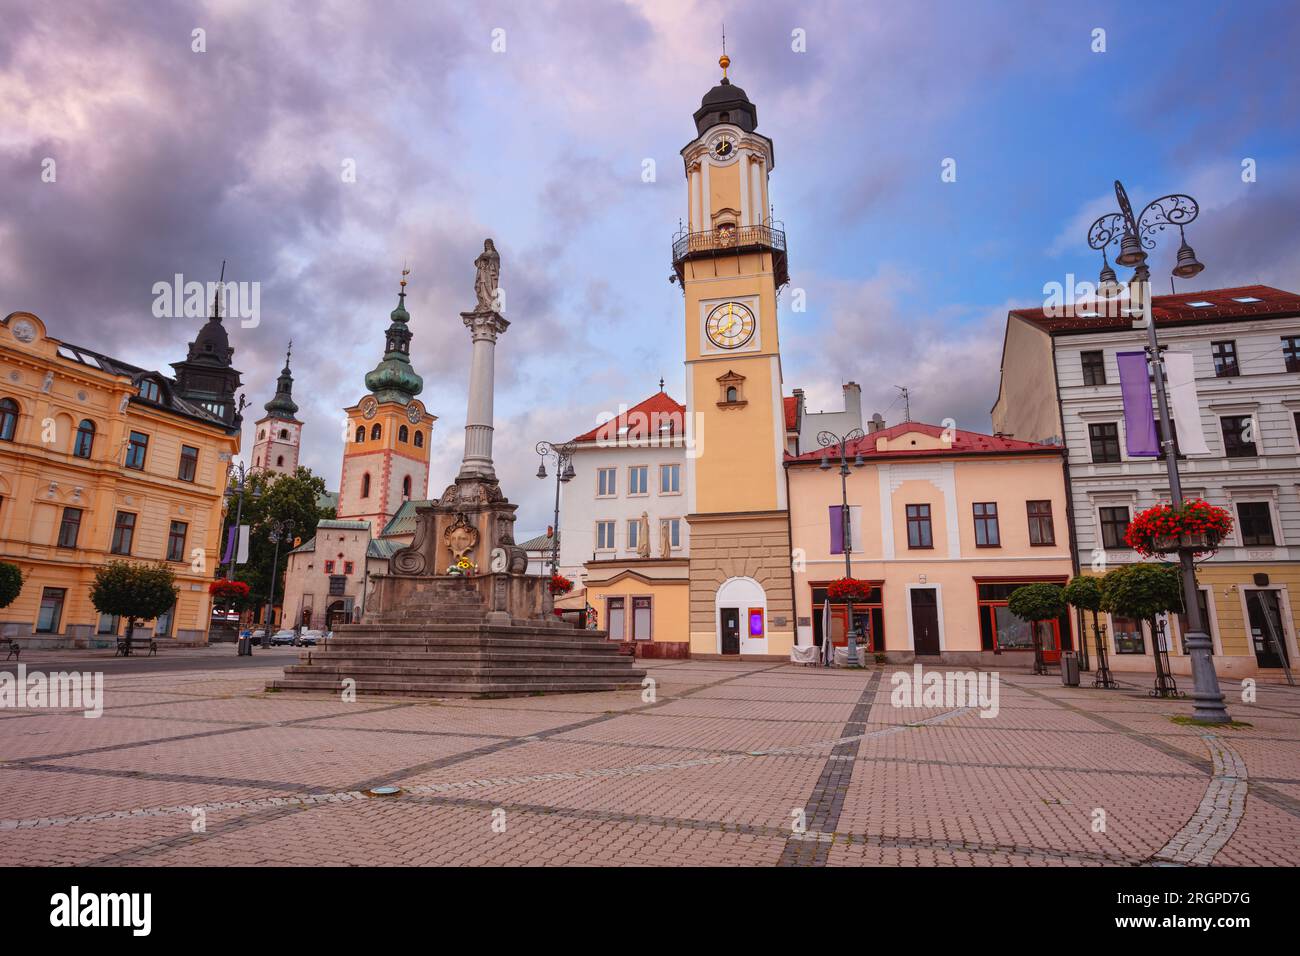 Banska Bystrica, Repubblica slovacca. Immagine del paesaggio urbano del centro di Banska Bystrica, Slovacchia, con la piazza nazionale slovacca della rivolta al tramonto estivo. Foto Stock